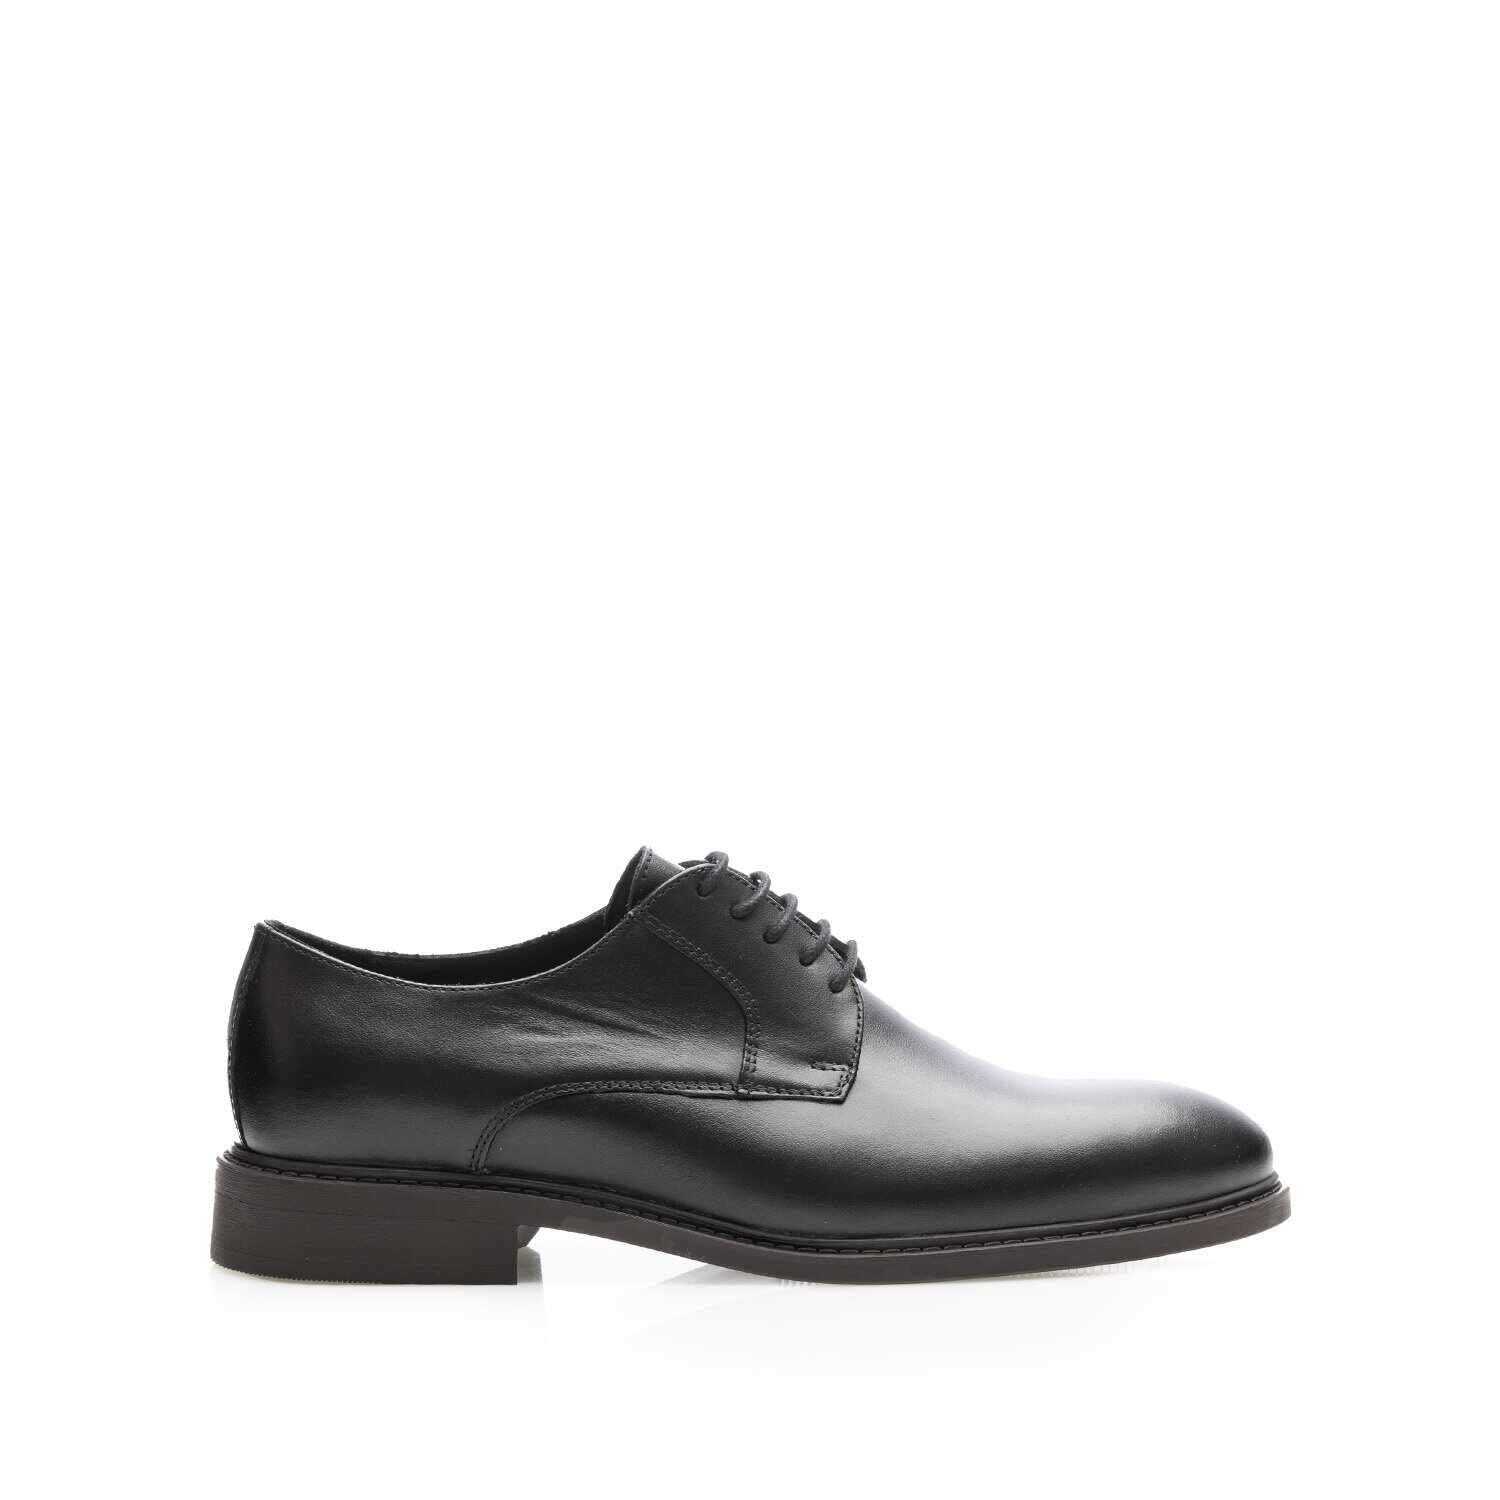 Pantofi casual bărbați din piele naturală, Leofex - Mostră Aris Negru Box